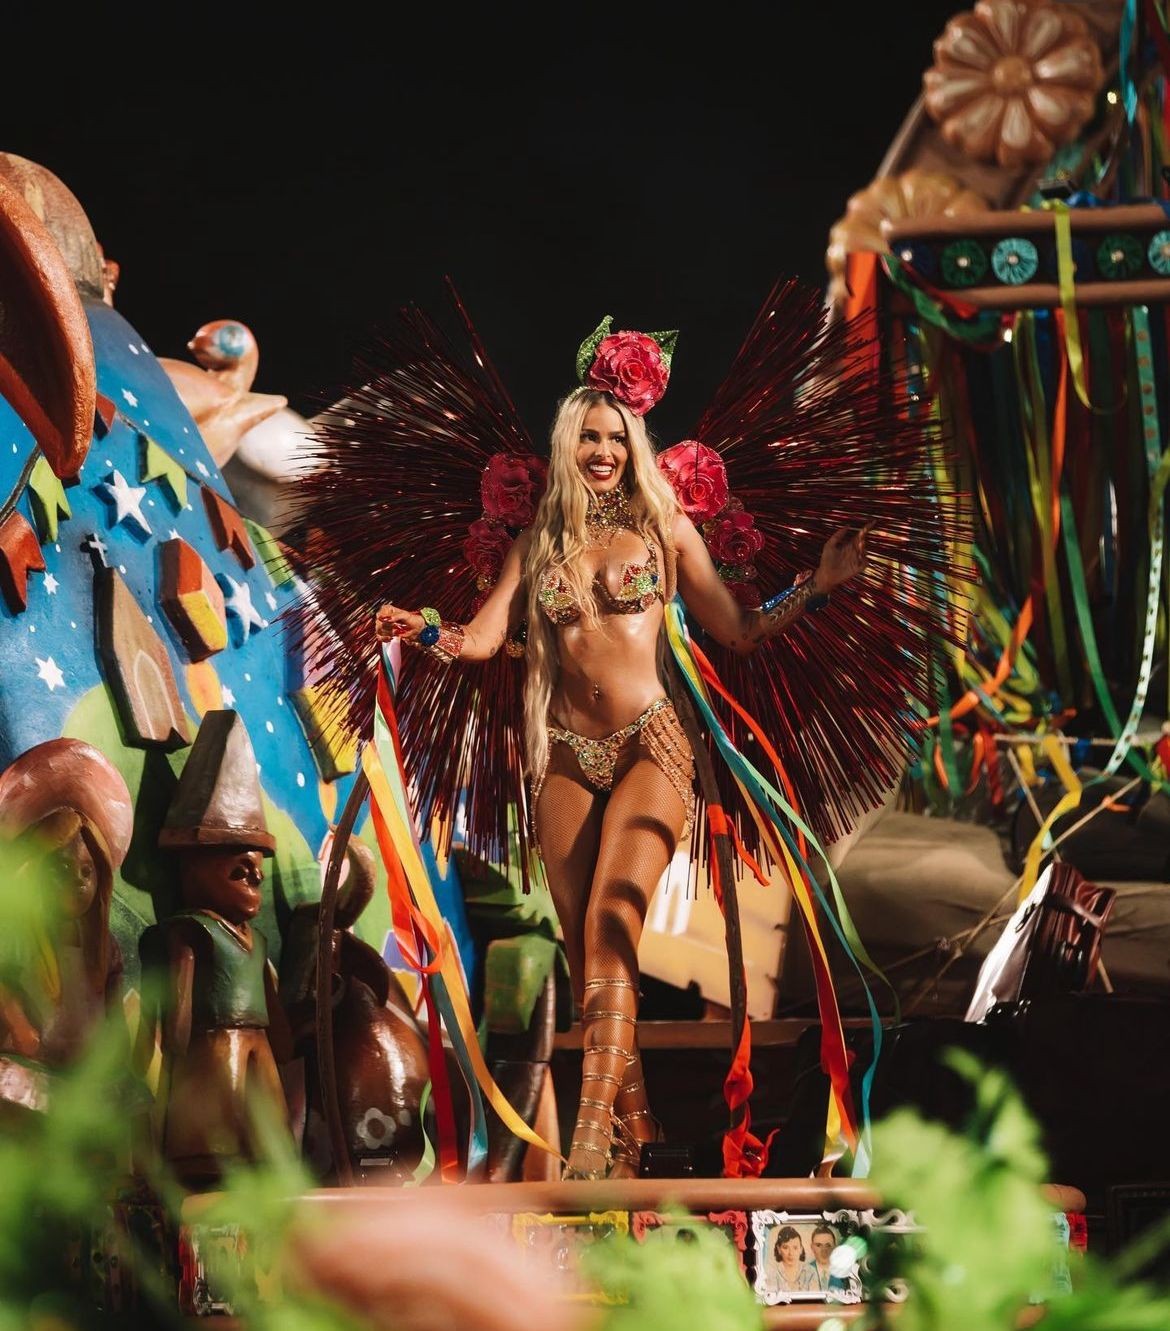 Yasmin Brunet desfilou pela primeira vez no carnaval do Rio pela Grande Rio como destaque em um dos carros — Foto: Reprodução/Instagram